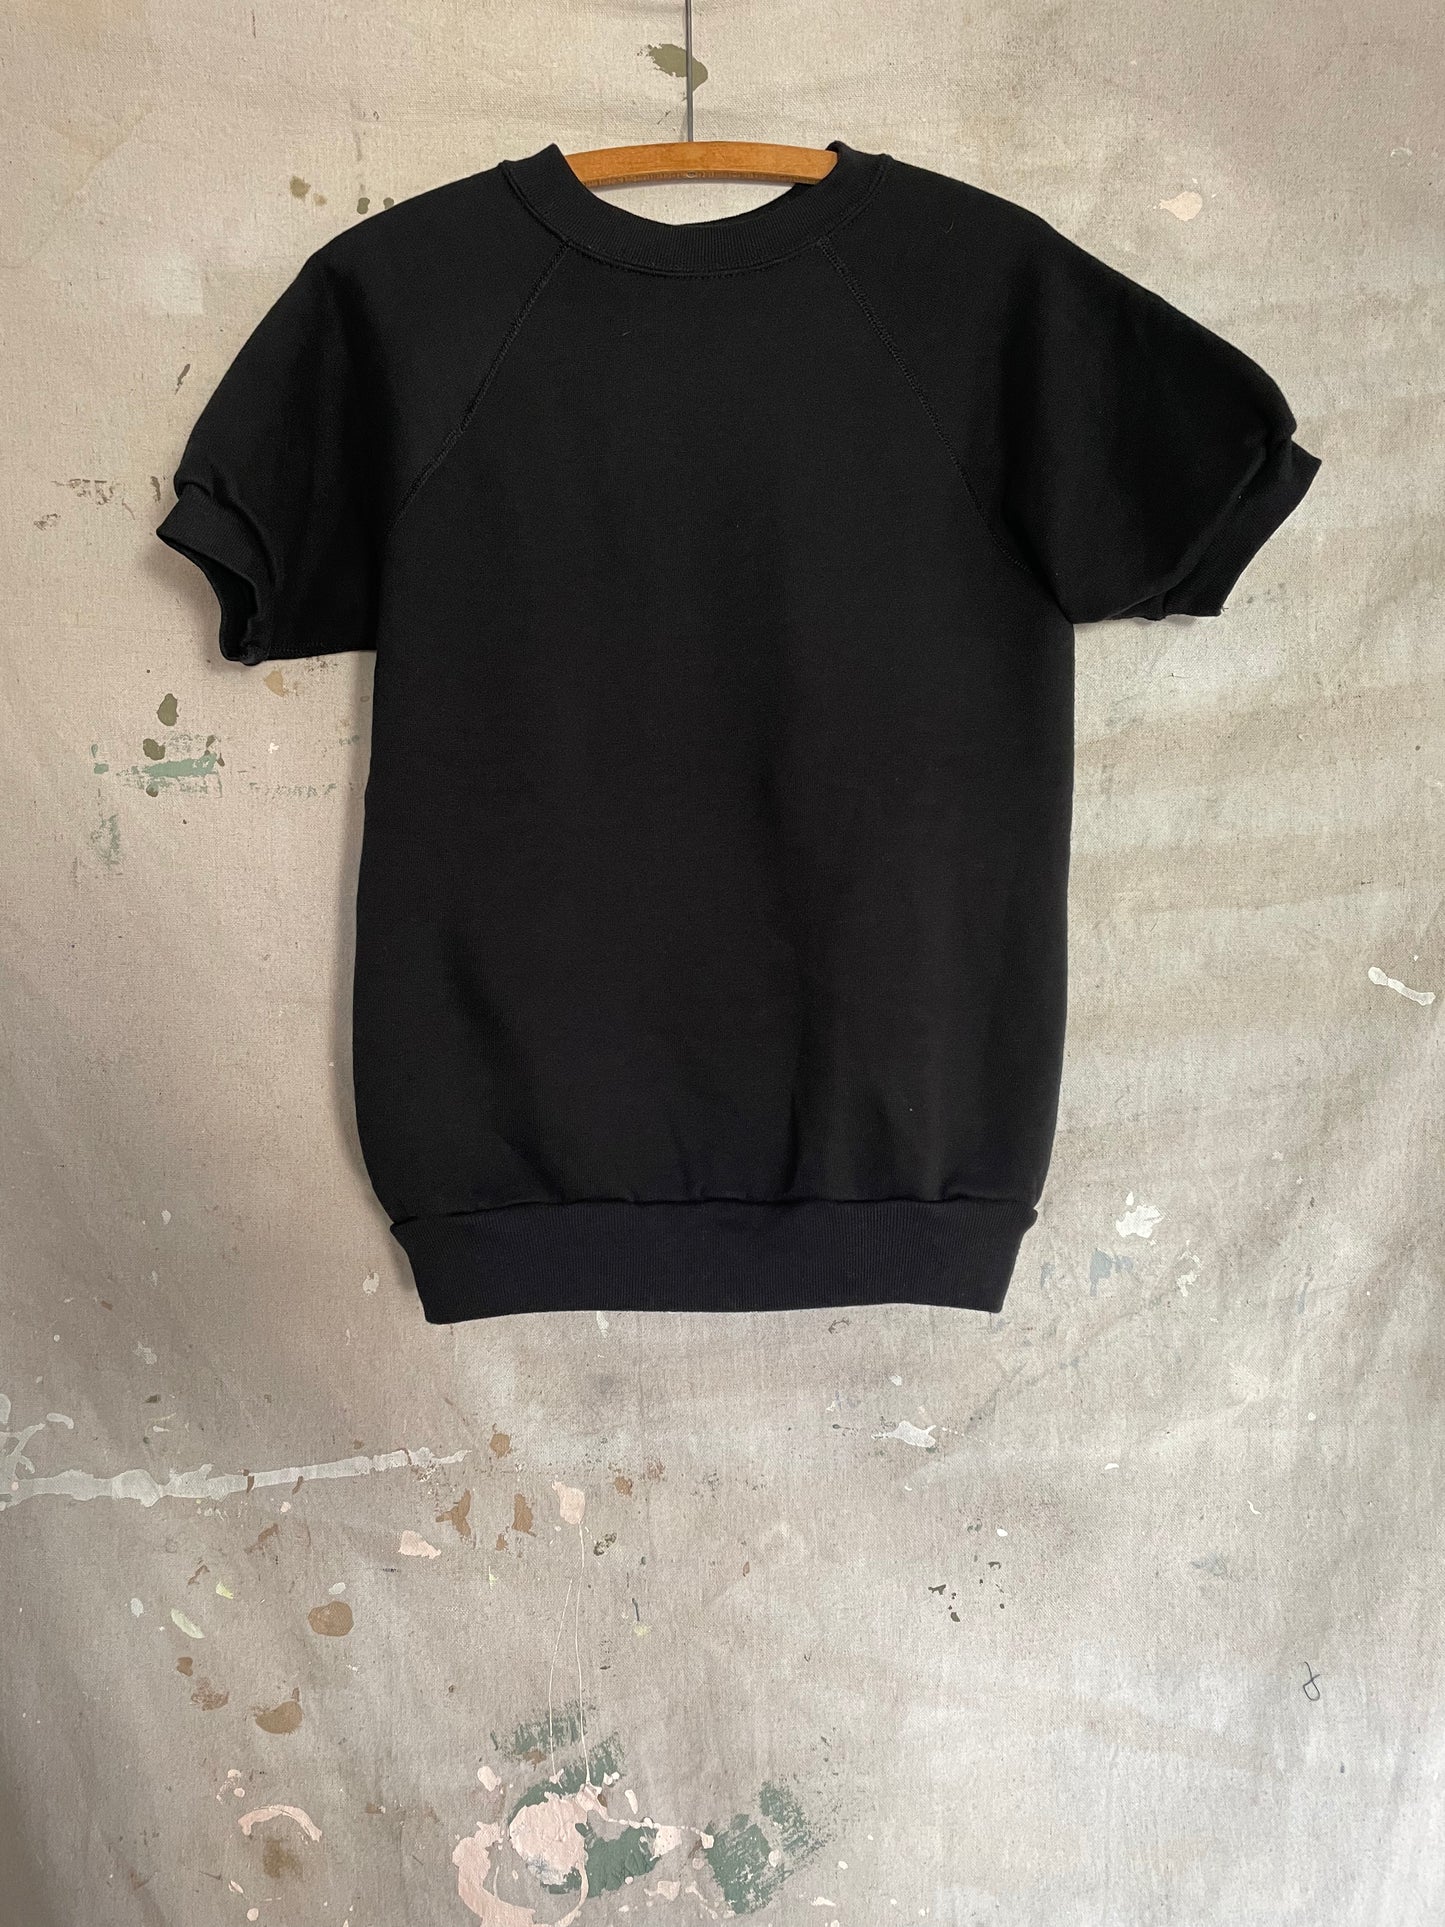 80s Deadstock Blank Black Short Sleeve Sweatshirt